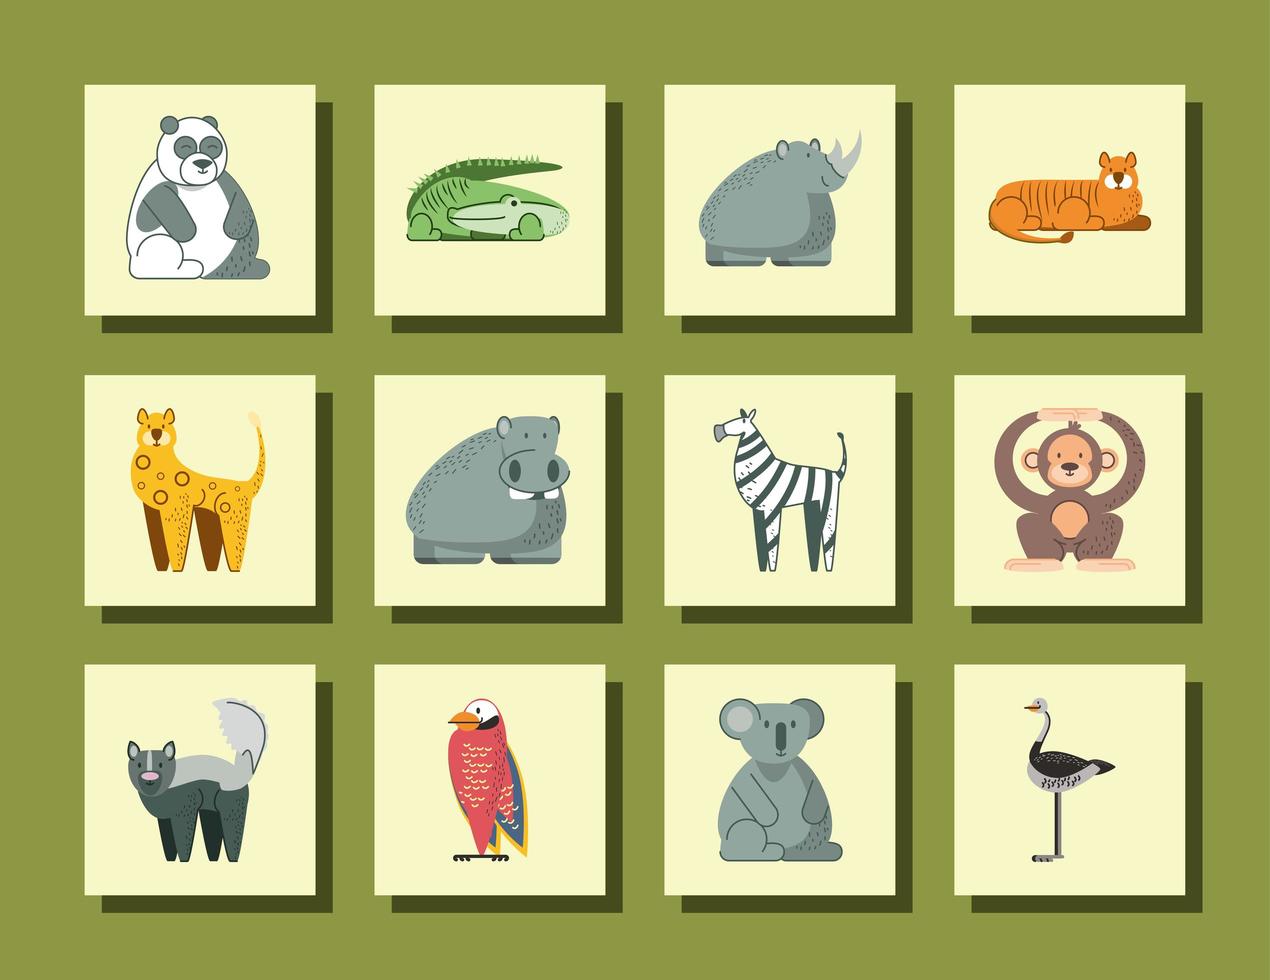 panda crocodile rhino hippo monkey koala and bird jungle animals cartoon icons vector